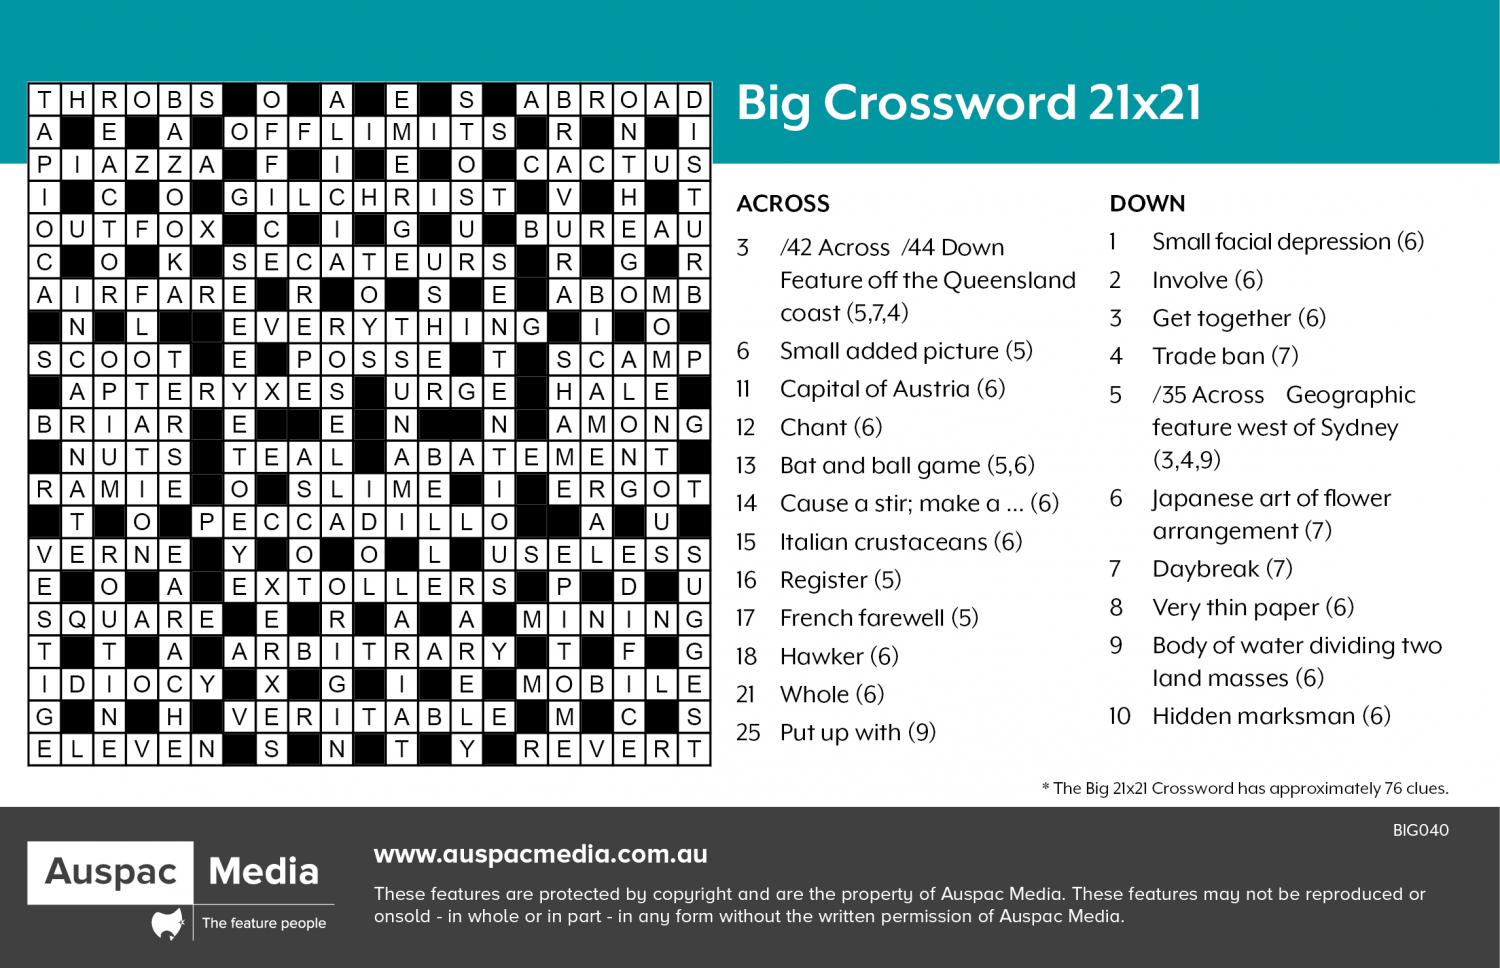 Edna ferber novel crossword